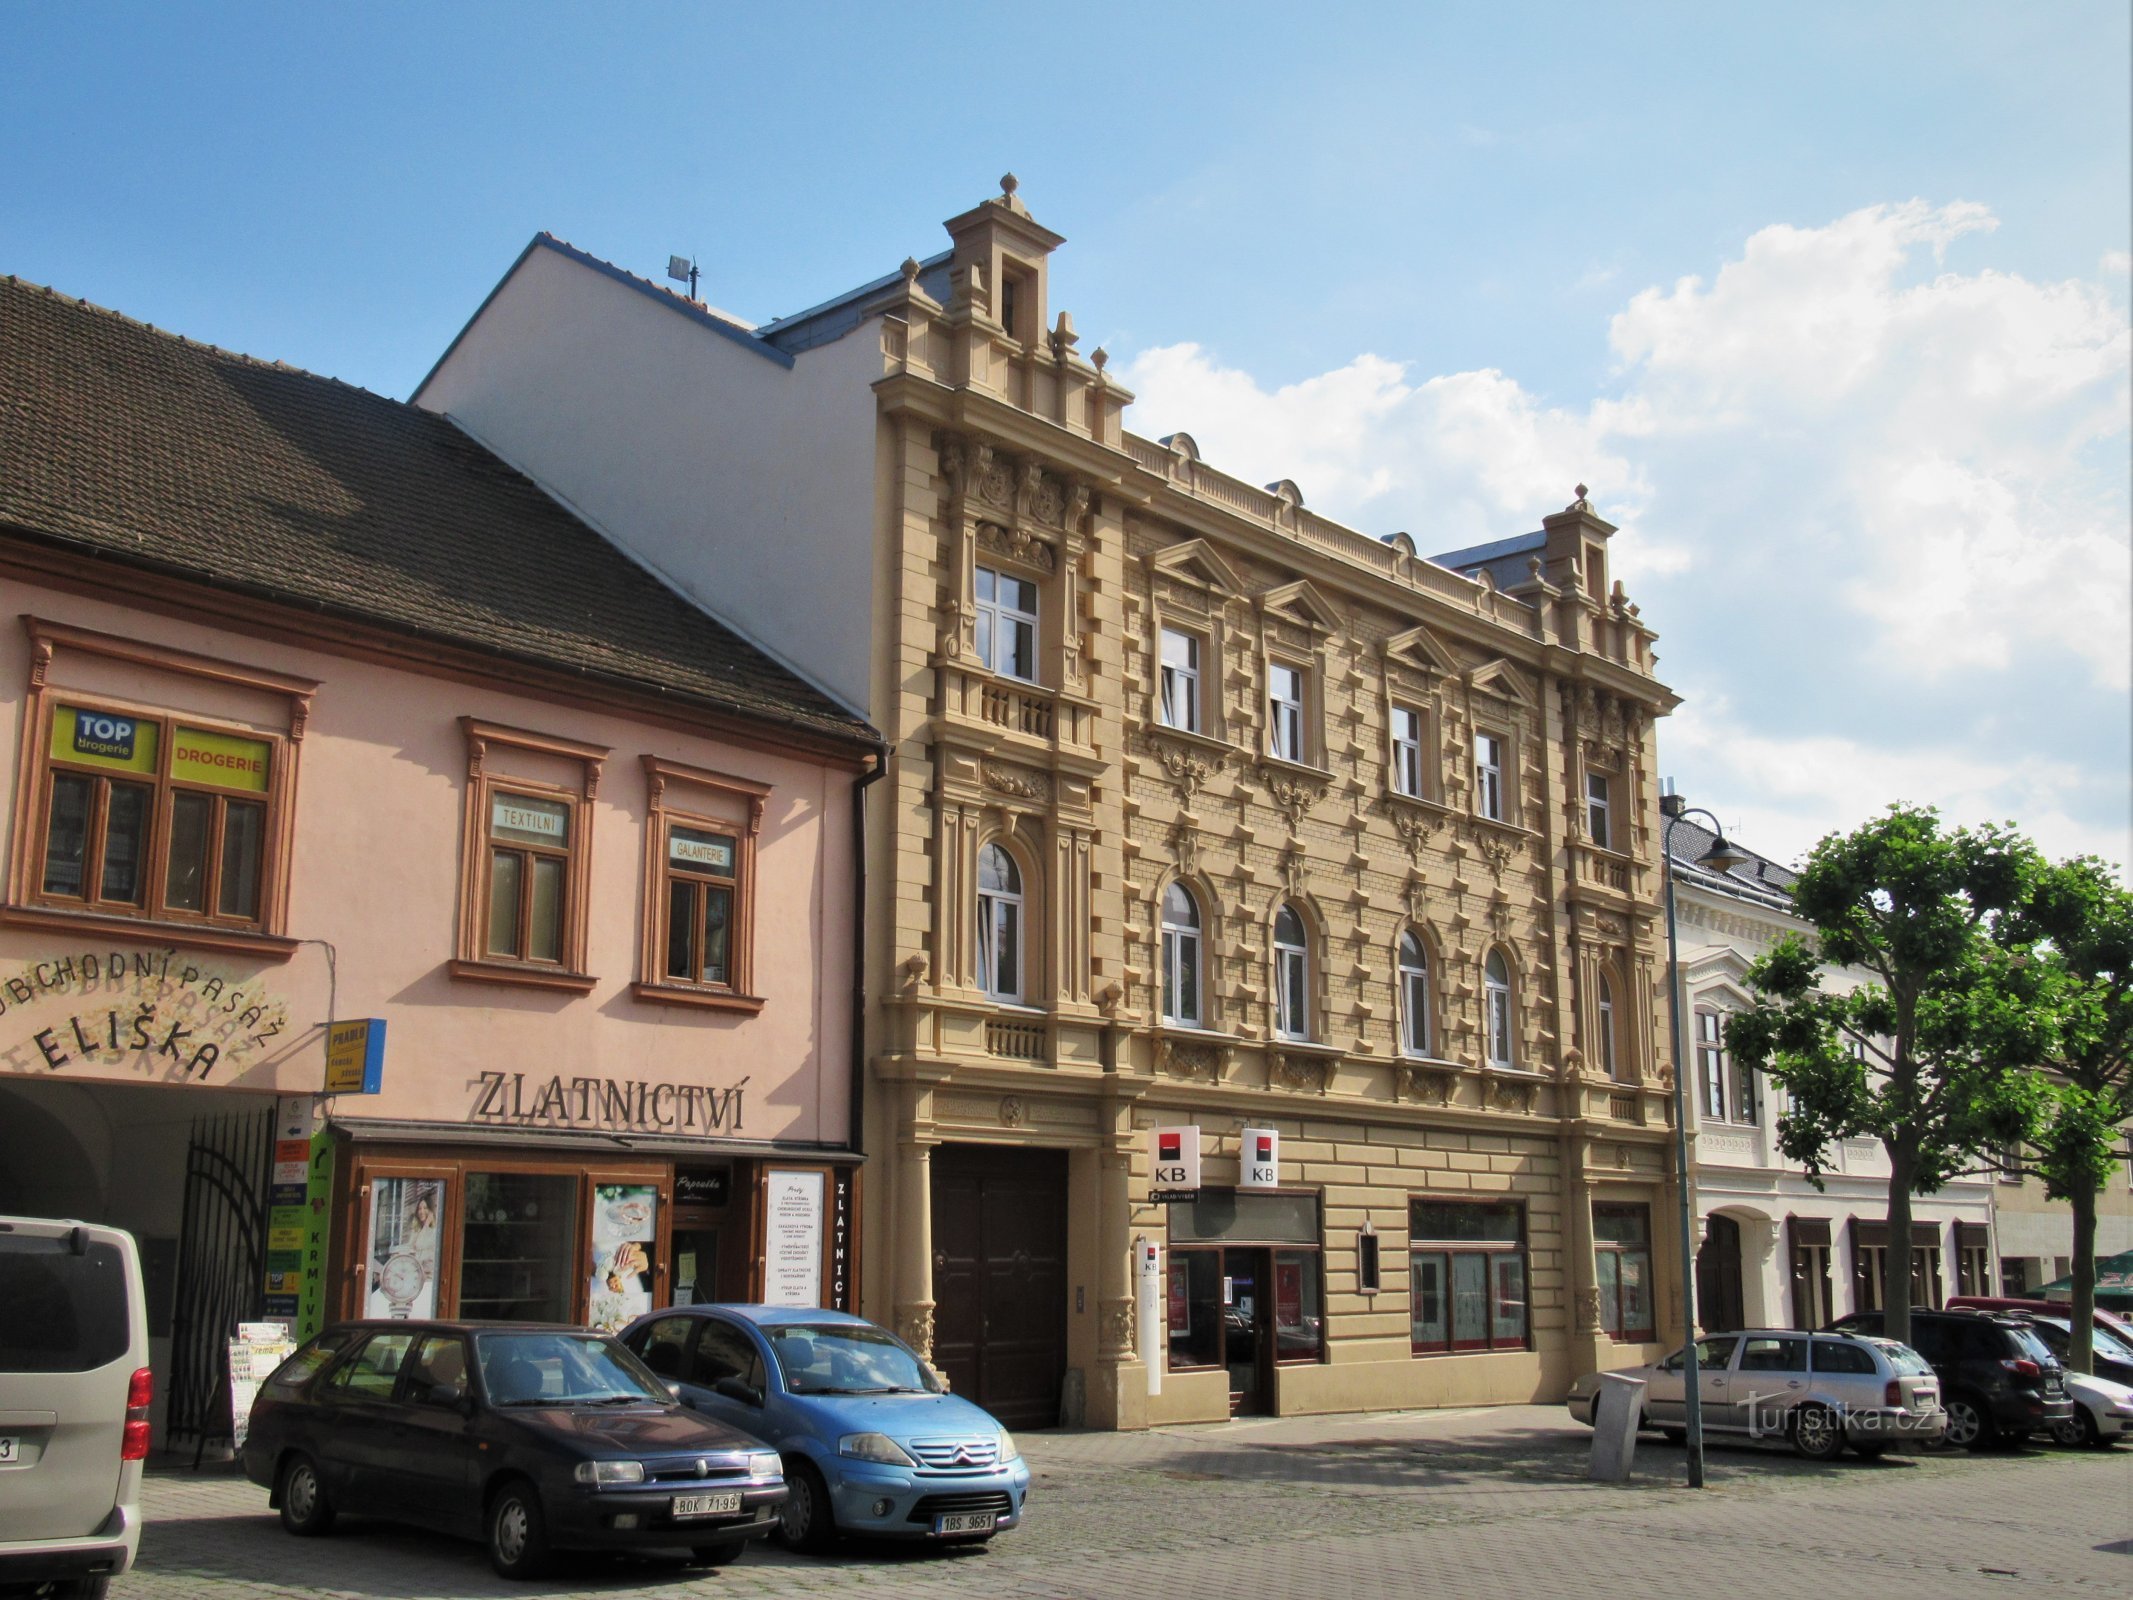 Židlochovice - casa nr. 28 pe Náměstí Míru